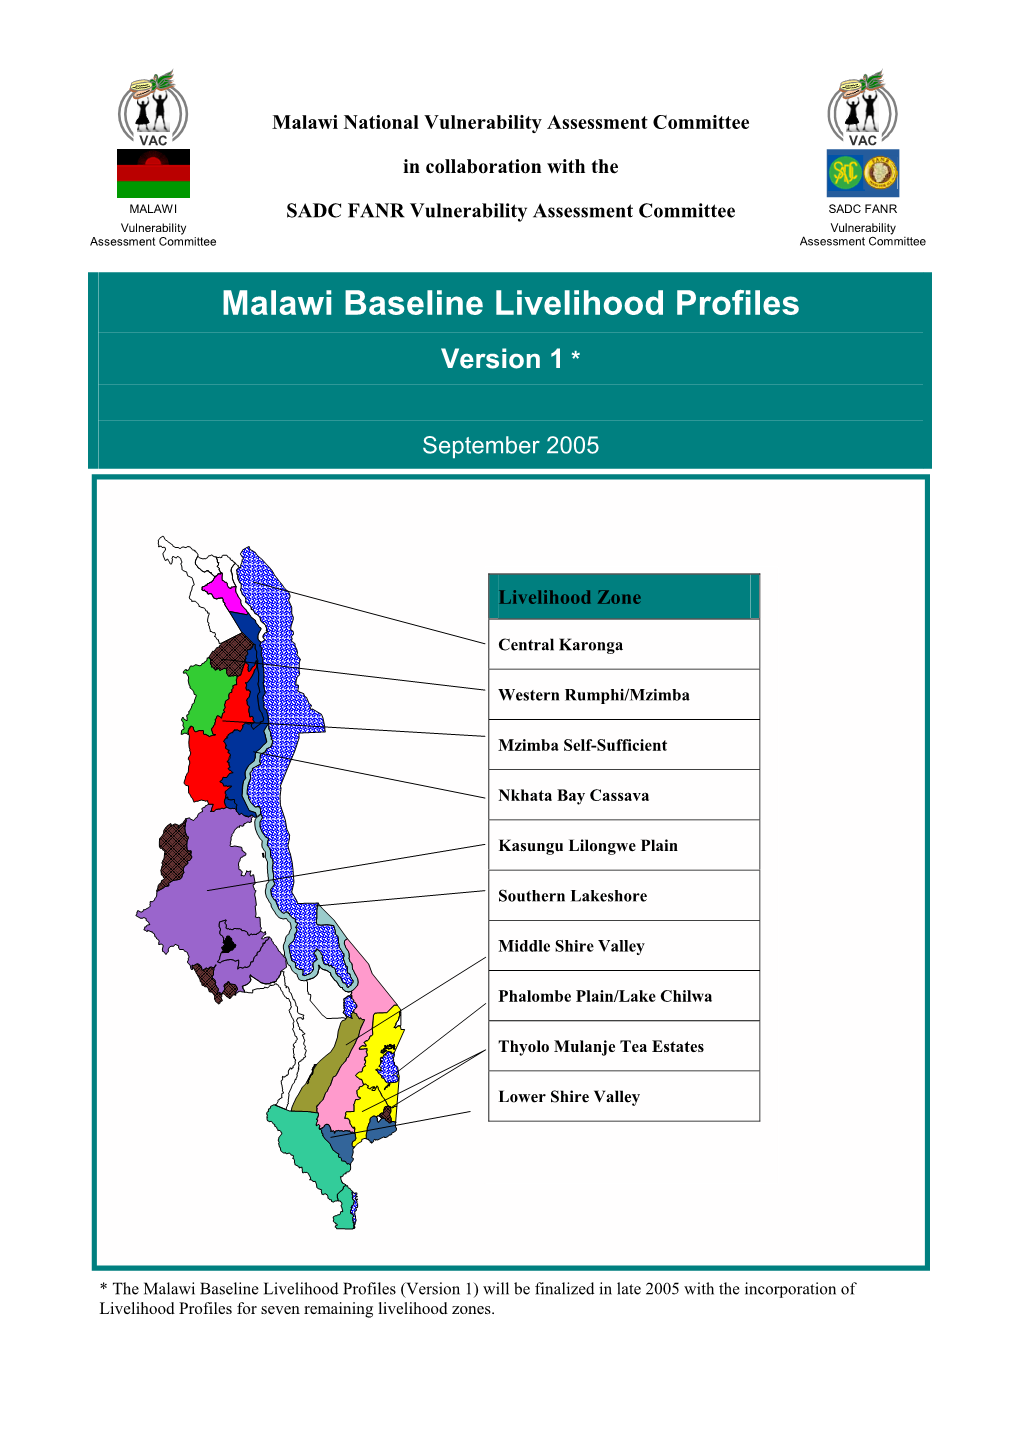 Malawi Baseline Livelihood Profiles